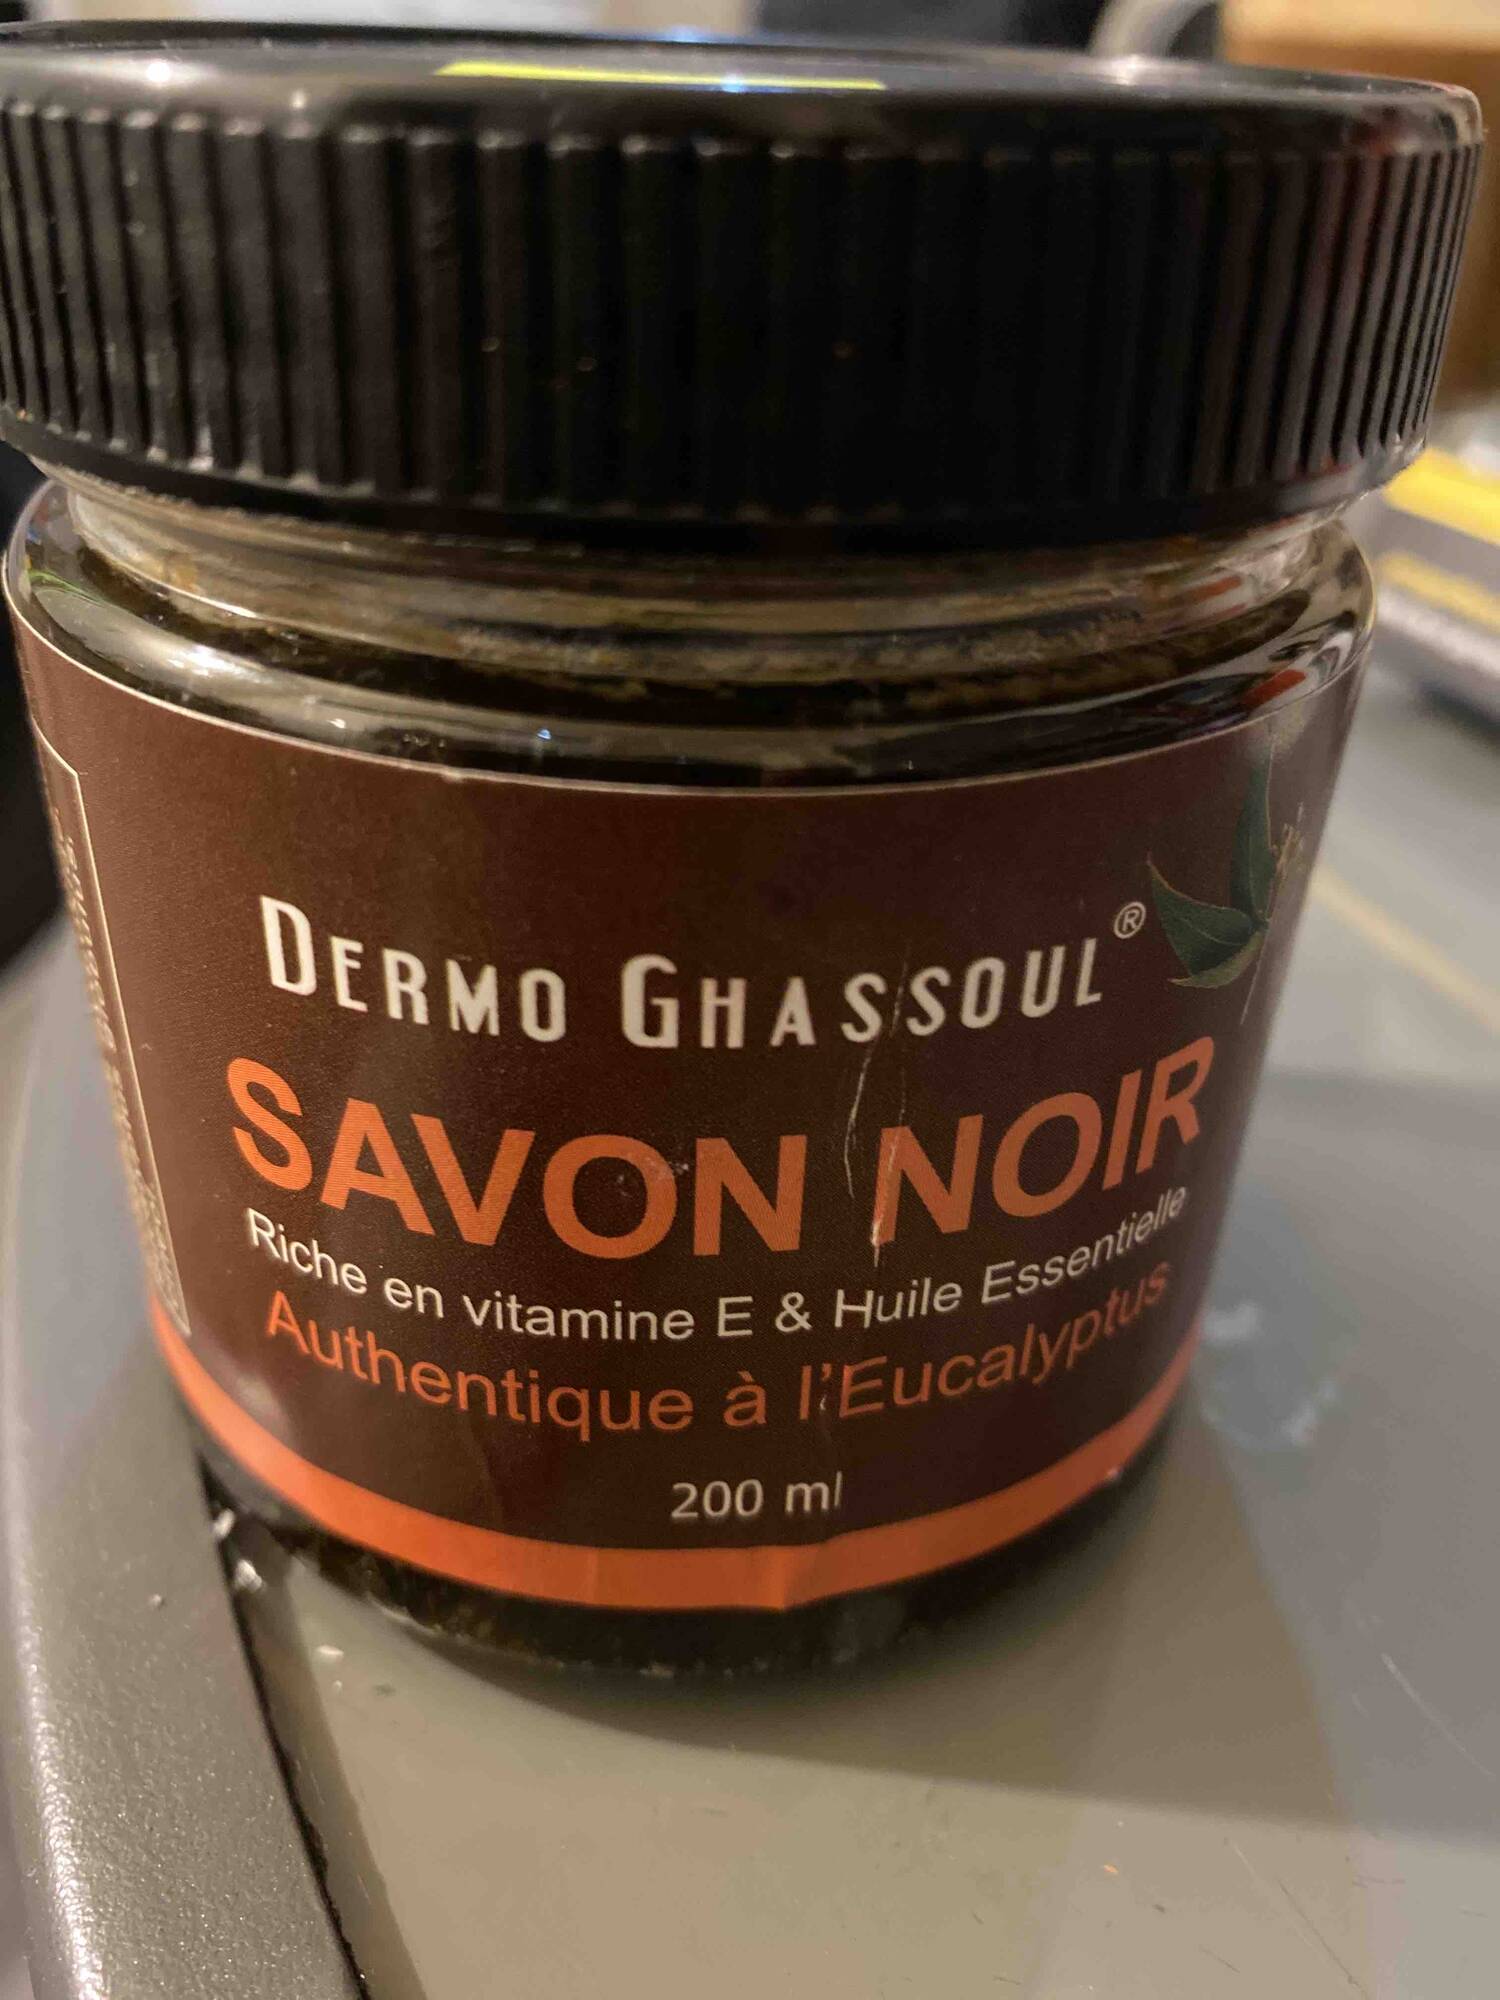 DERMO GHASSOUL - Authentique à l'eucalyptus - Savon noir à l'huile